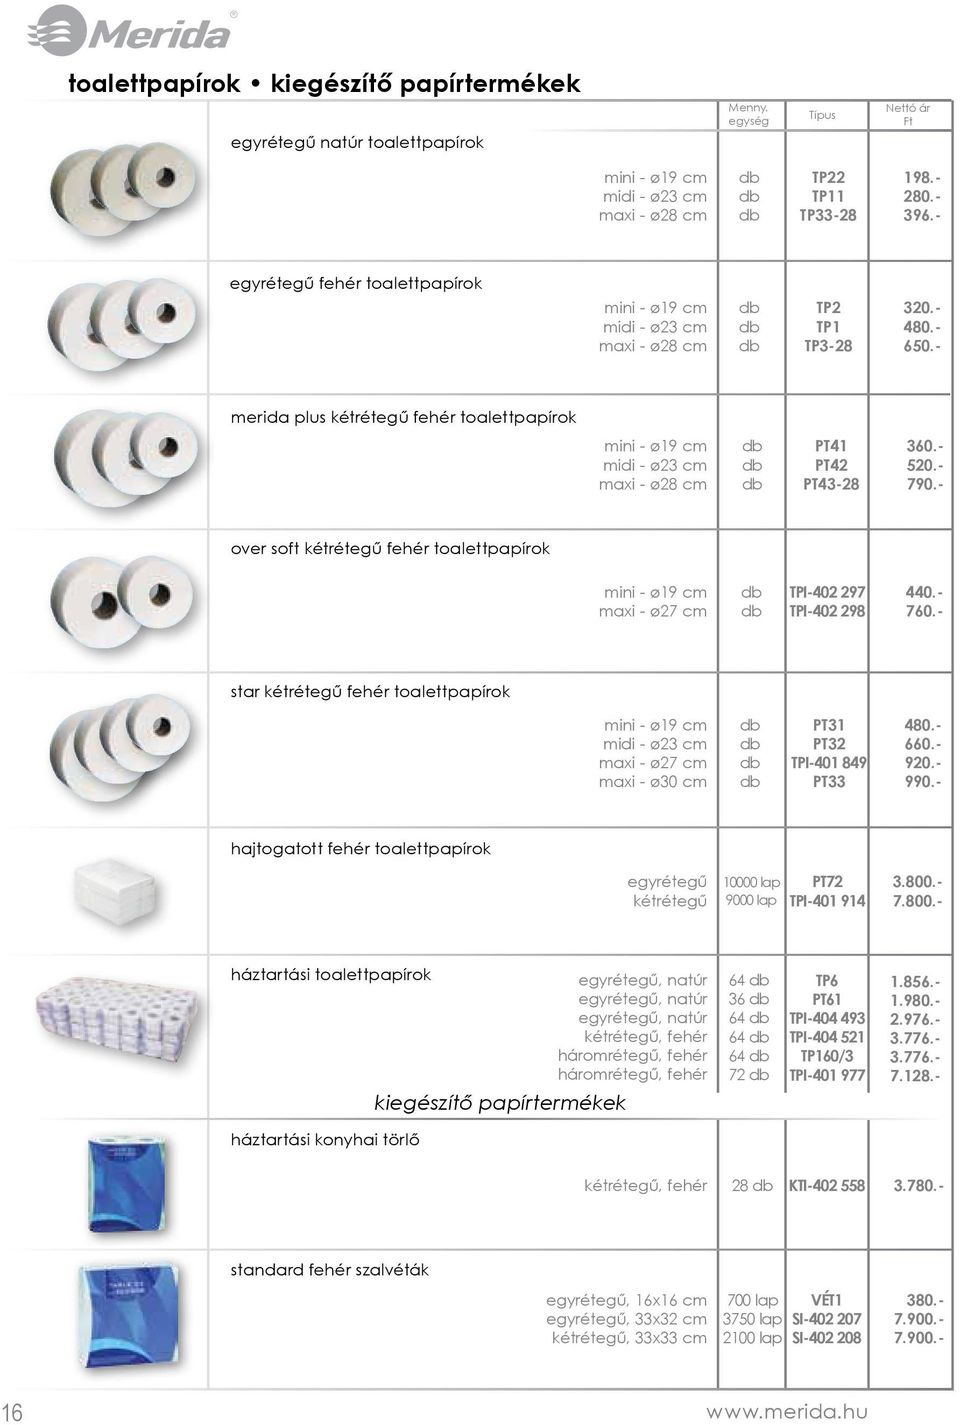 - merida plus kétrétegű fehér toalettpapírok mini - ø19 cm midi - ø23 cm maxi - ø28 cm PT41 PT42 PT43-28 360.- 520.- 790.